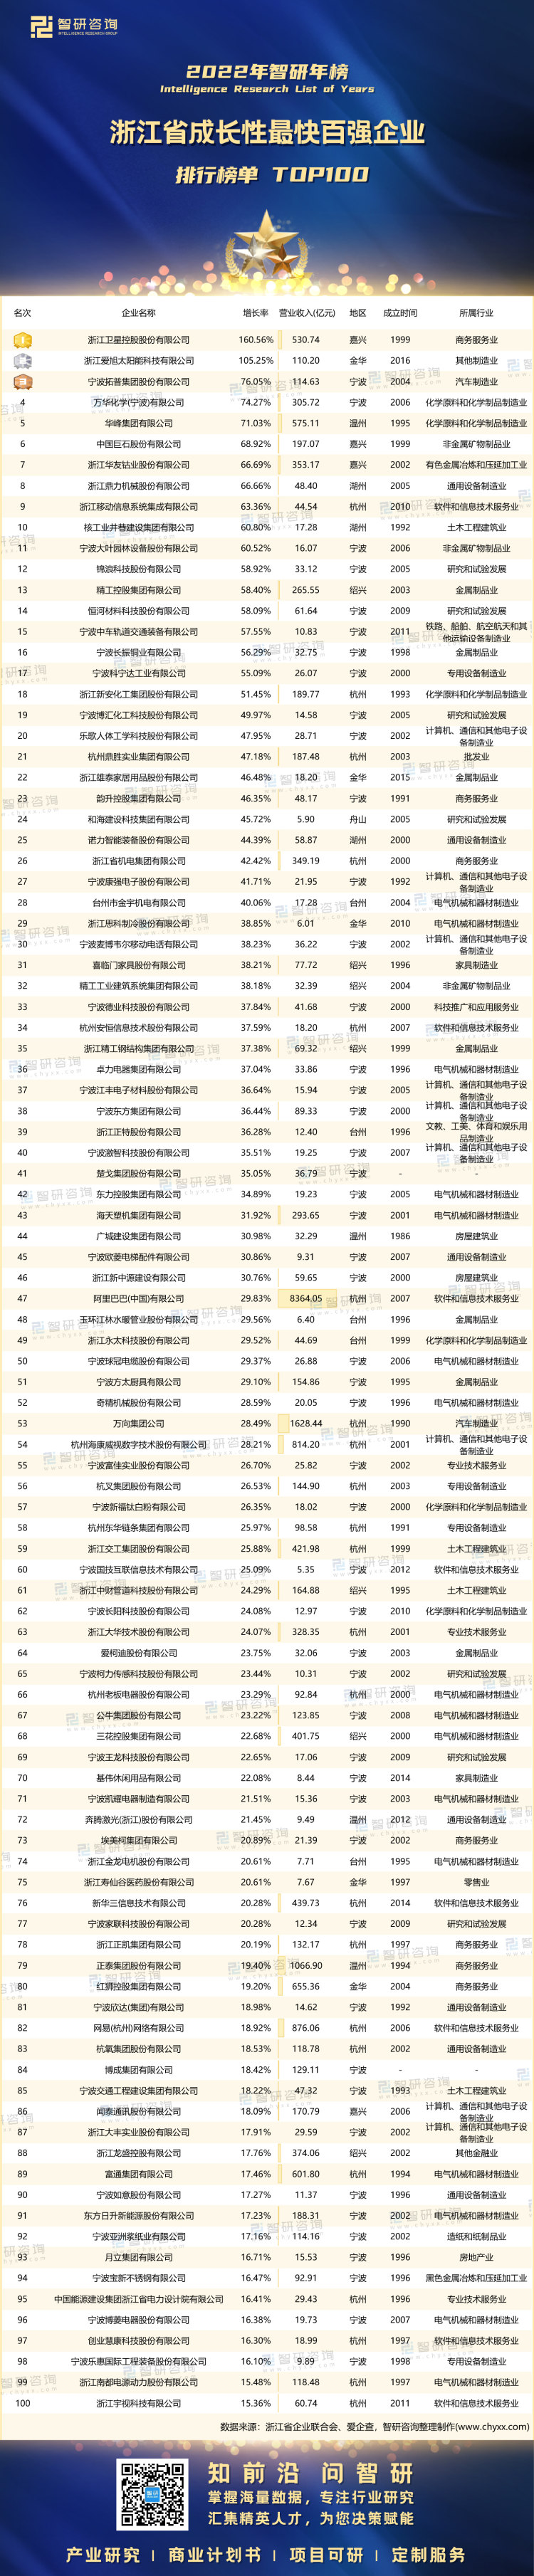 1006：浙江省成长性最快百强企业-带水印带二维码（王钦）_画板 1